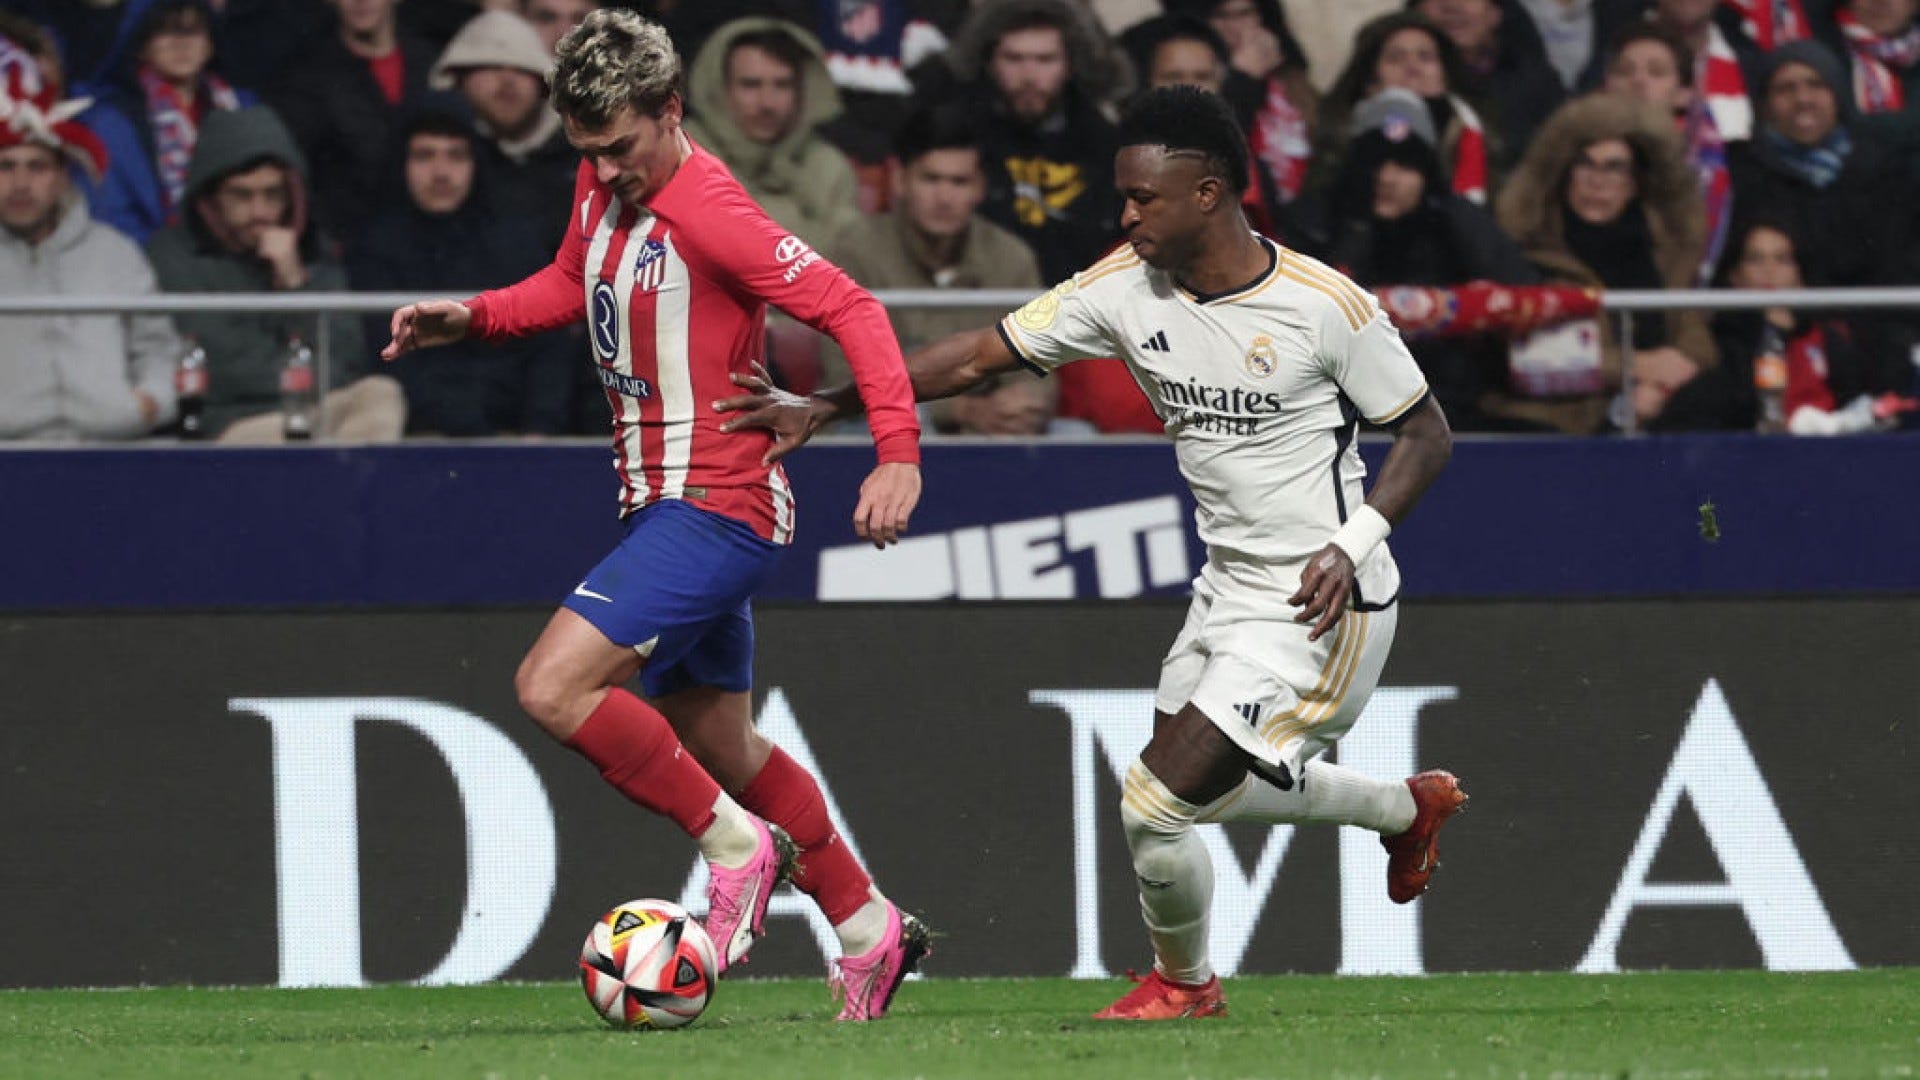 A qué hora juega Real Madrid vs Atlético? Partido de Liga de España - Grupo  Milenio